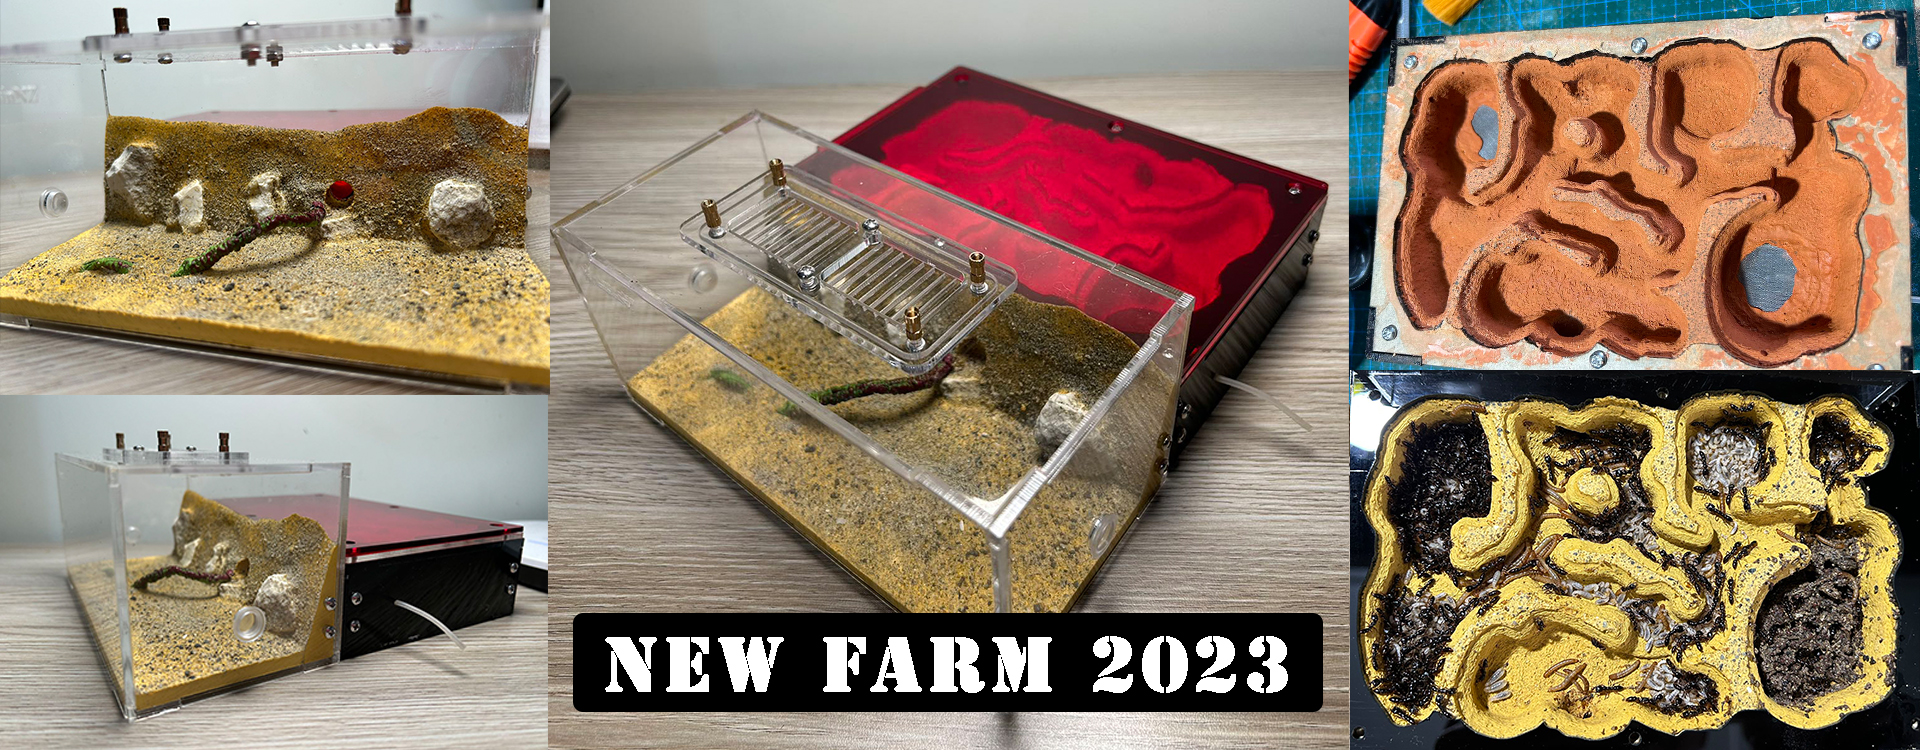 new farm